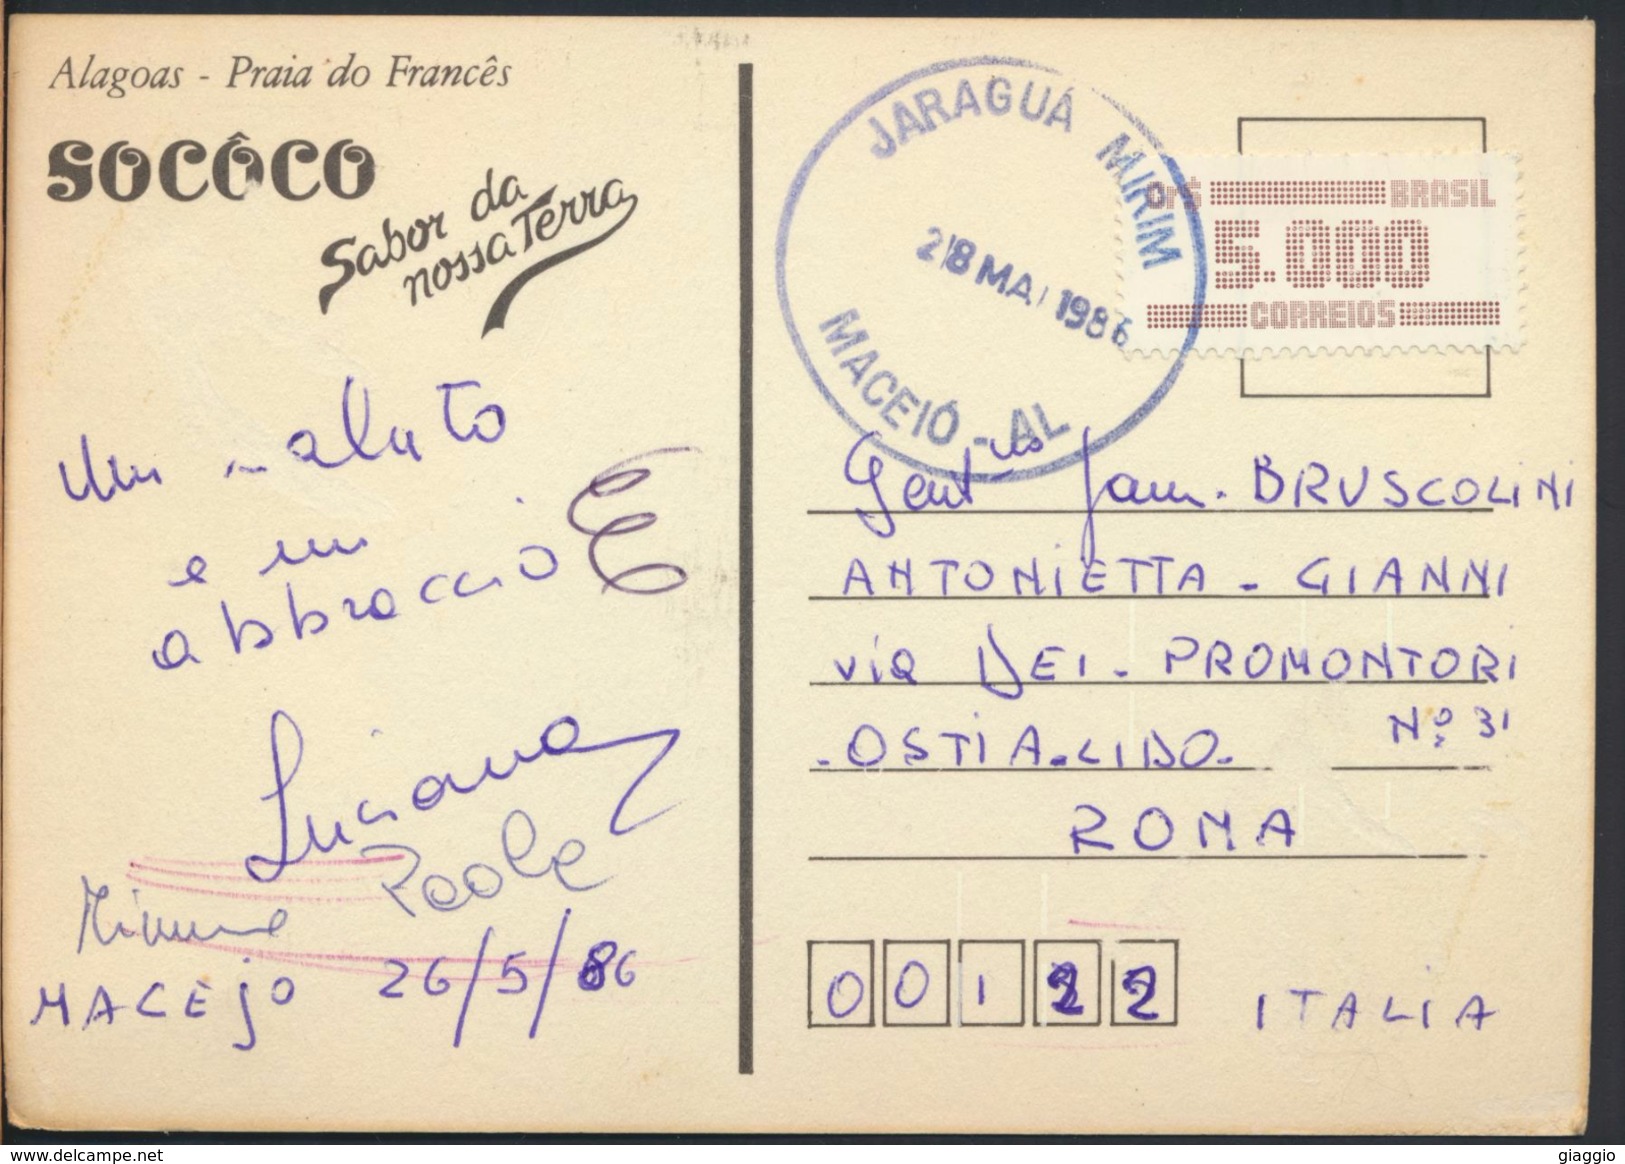 °°° 3664 - BRASIL - ALAGOAS - PRAIA DO FRANCES - 1986 With Stamps °°° - Maceió